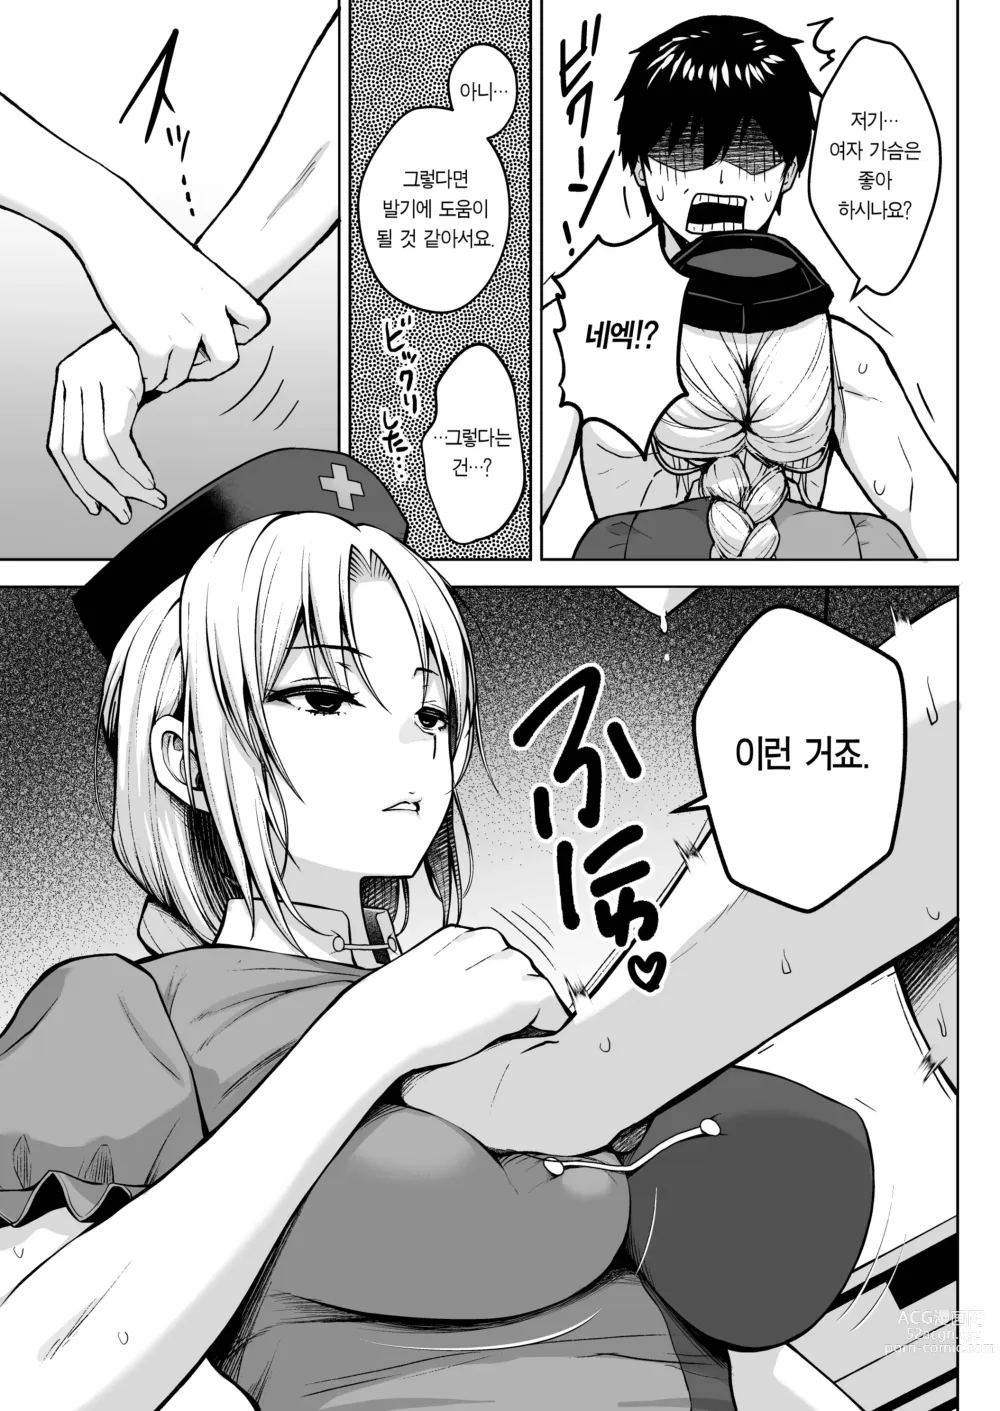 Page 9 of doujinshi 에이린이 가슴을 존나 괴롭혀져서 P컵이 되기까지의 이야기